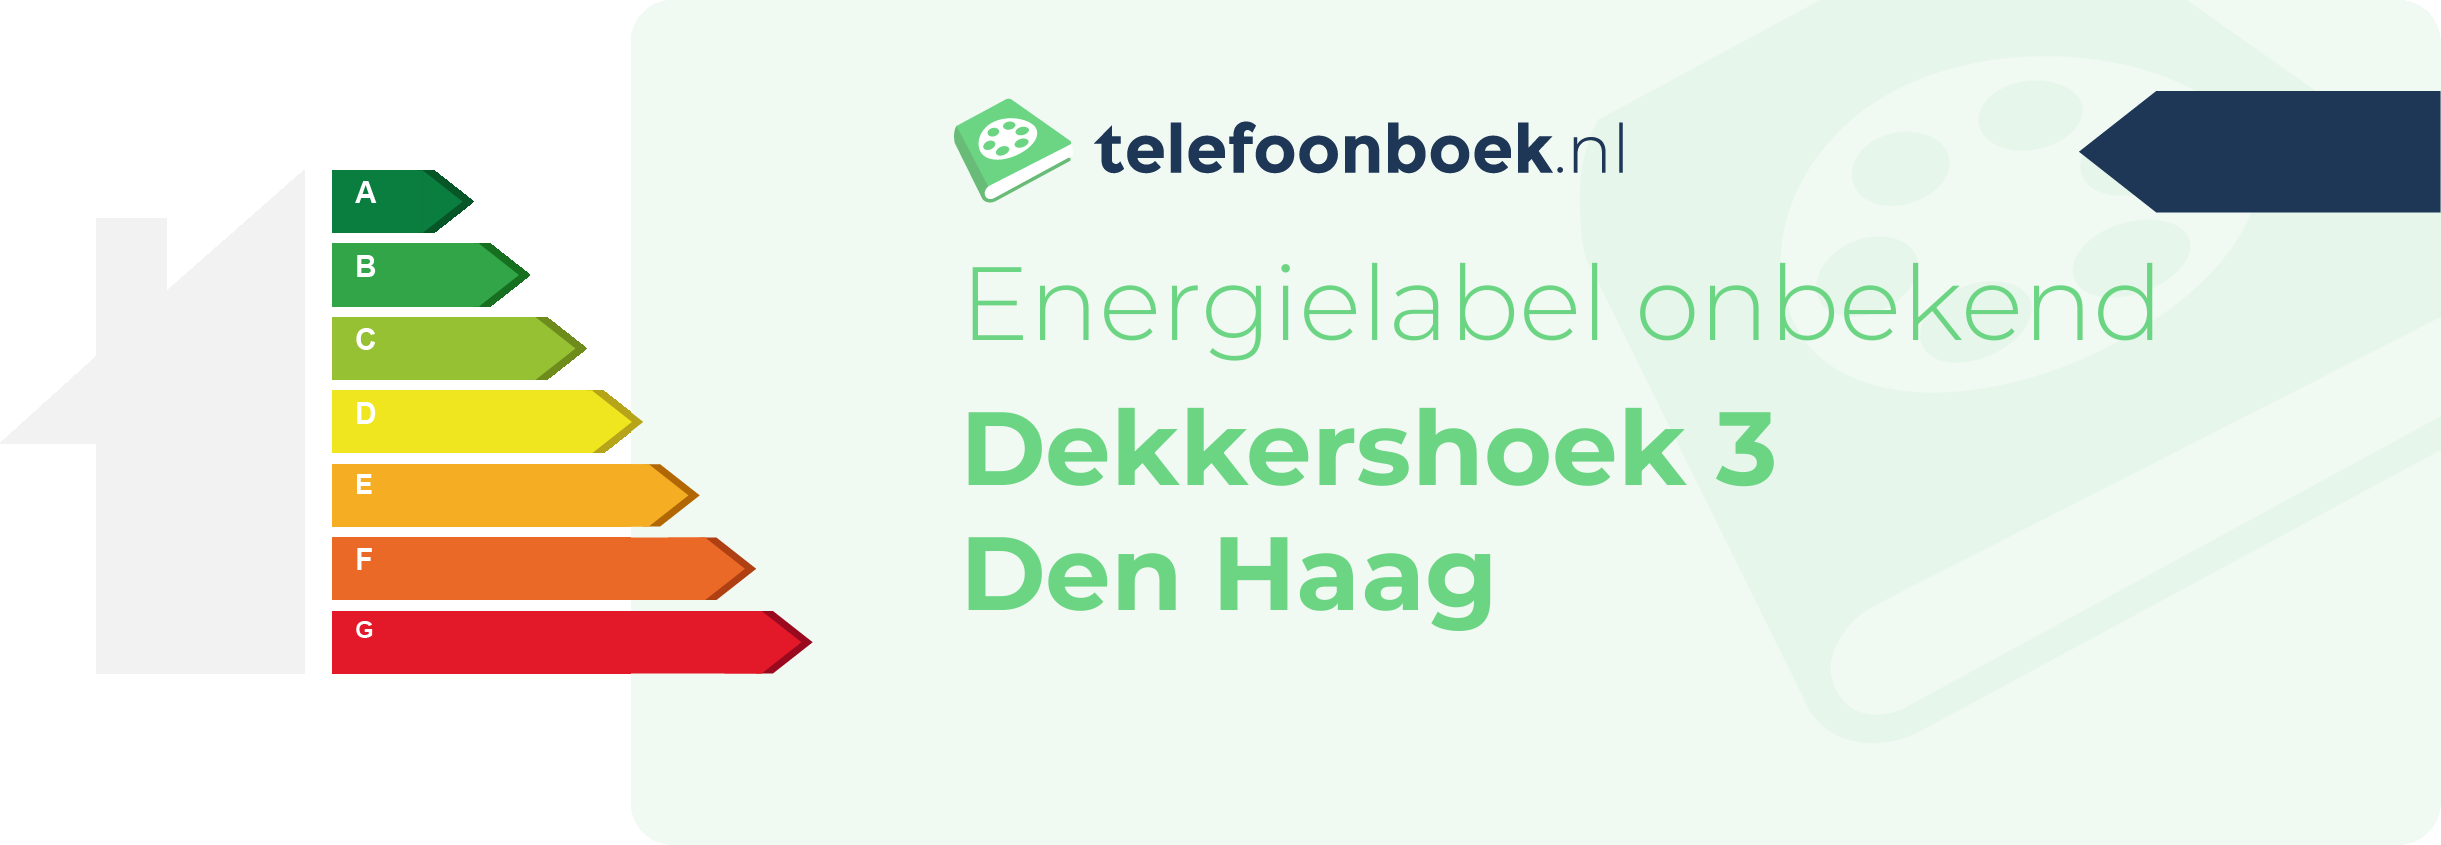 Energielabel Dekkershoek 3 Den Haag